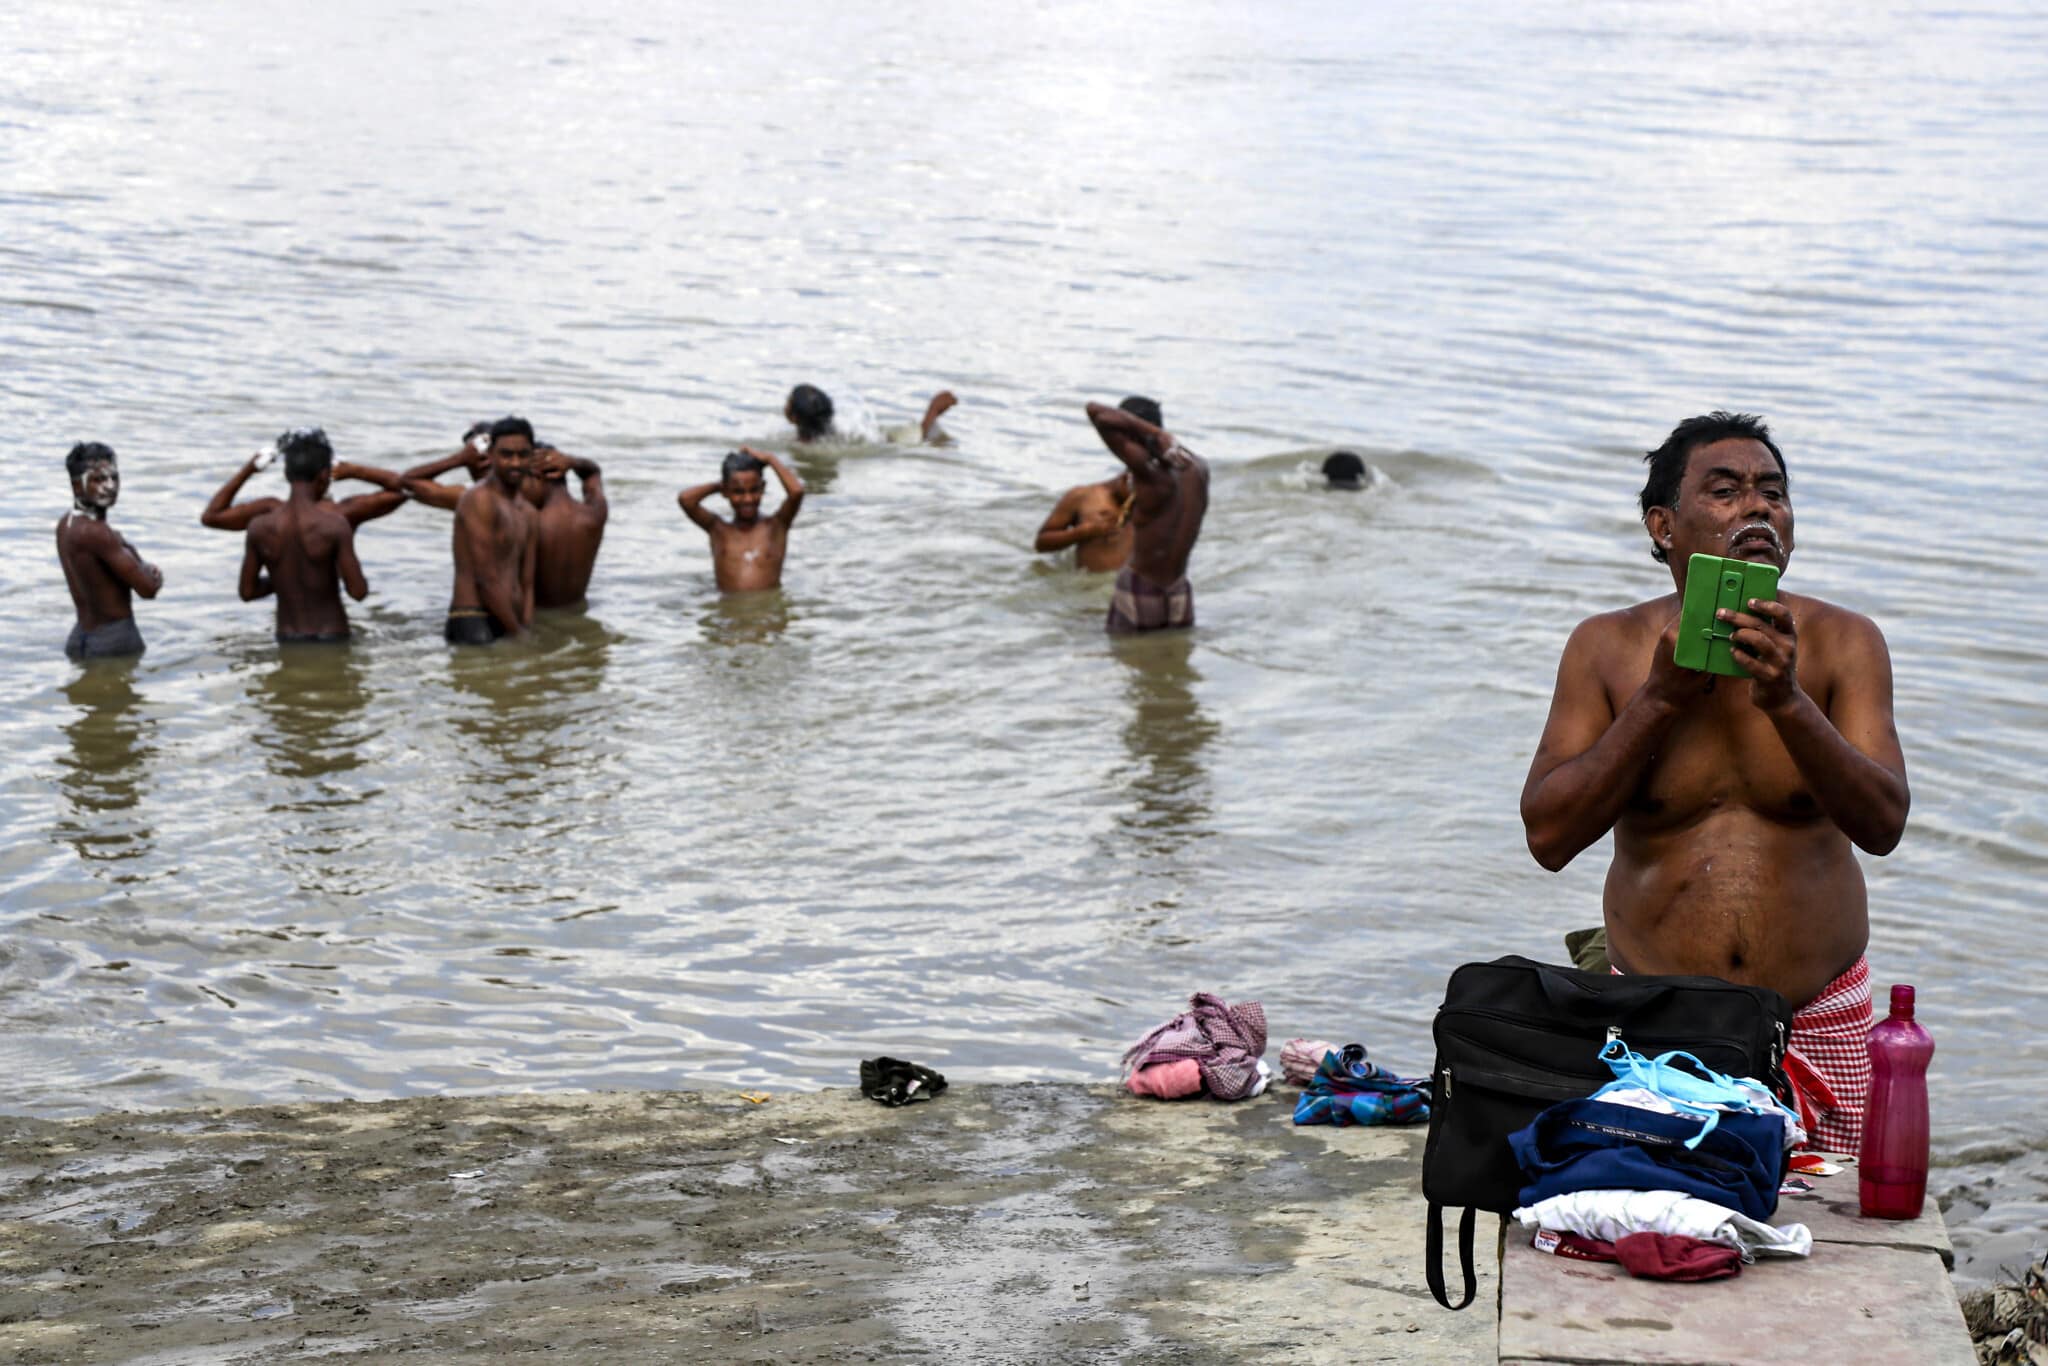 אדם גוזם את זקנו, בעוד שאחרים רוחצים בנהר בקולקטה, ספטמבר 2020 (צילום: AP Photo / Bikas Das)